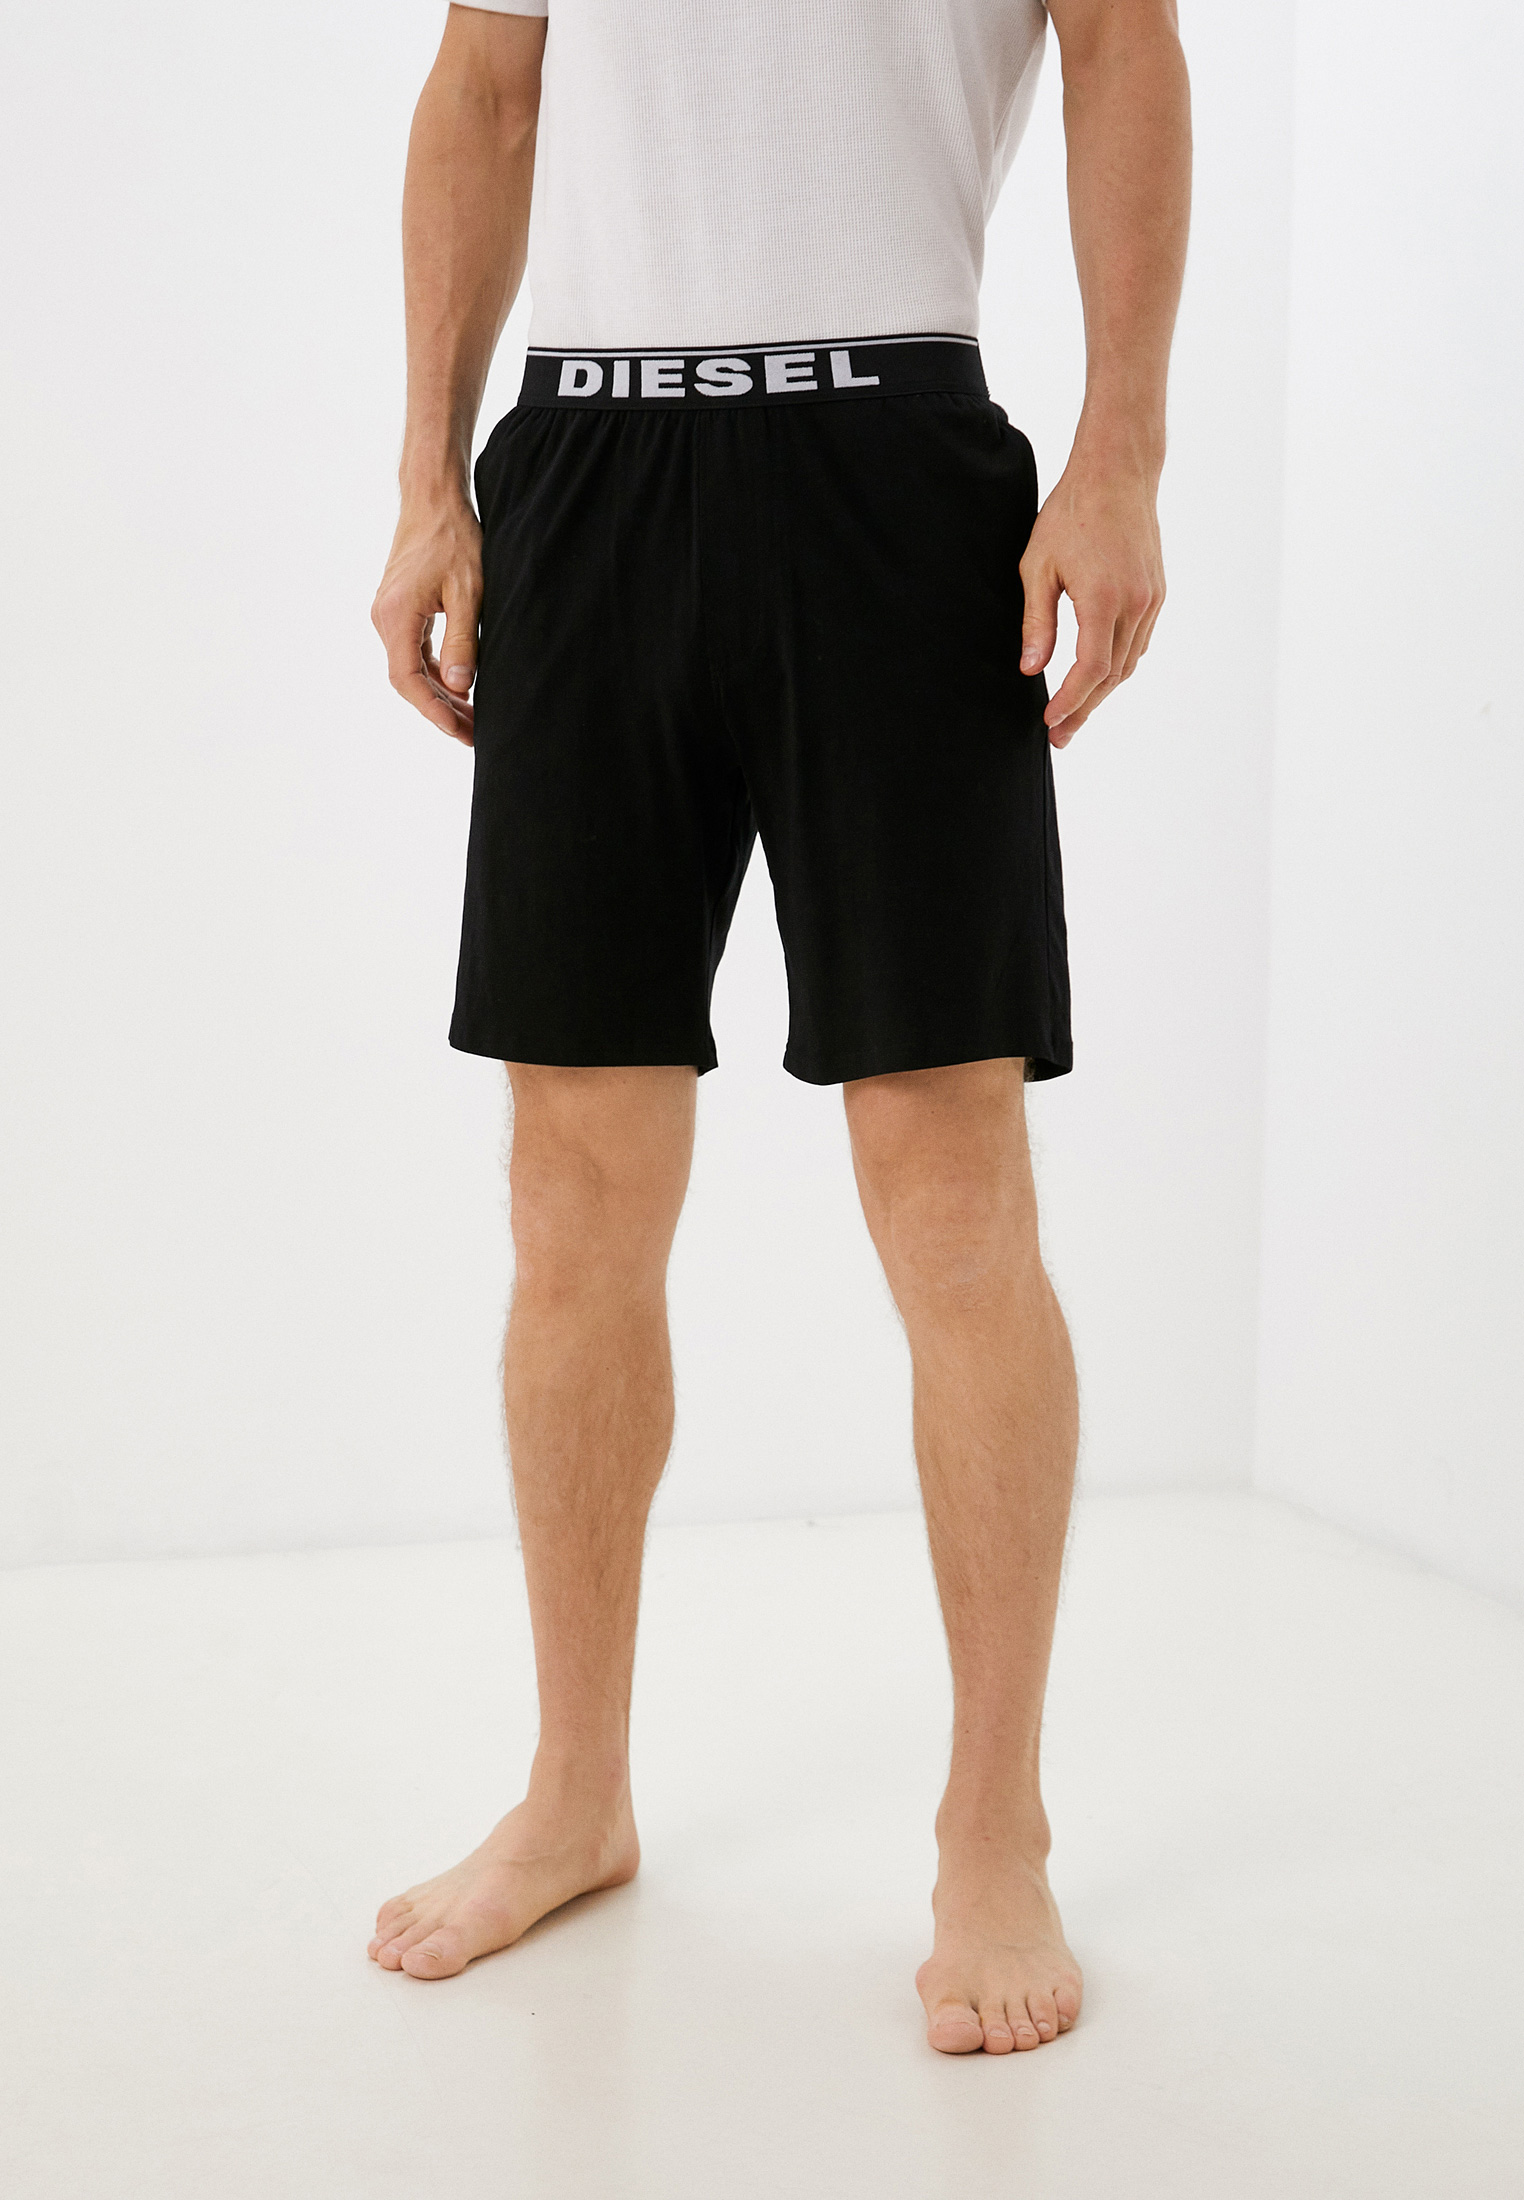 Мужские домашние брюки Diesel (Дизель) A009640JKKB: изображение 1